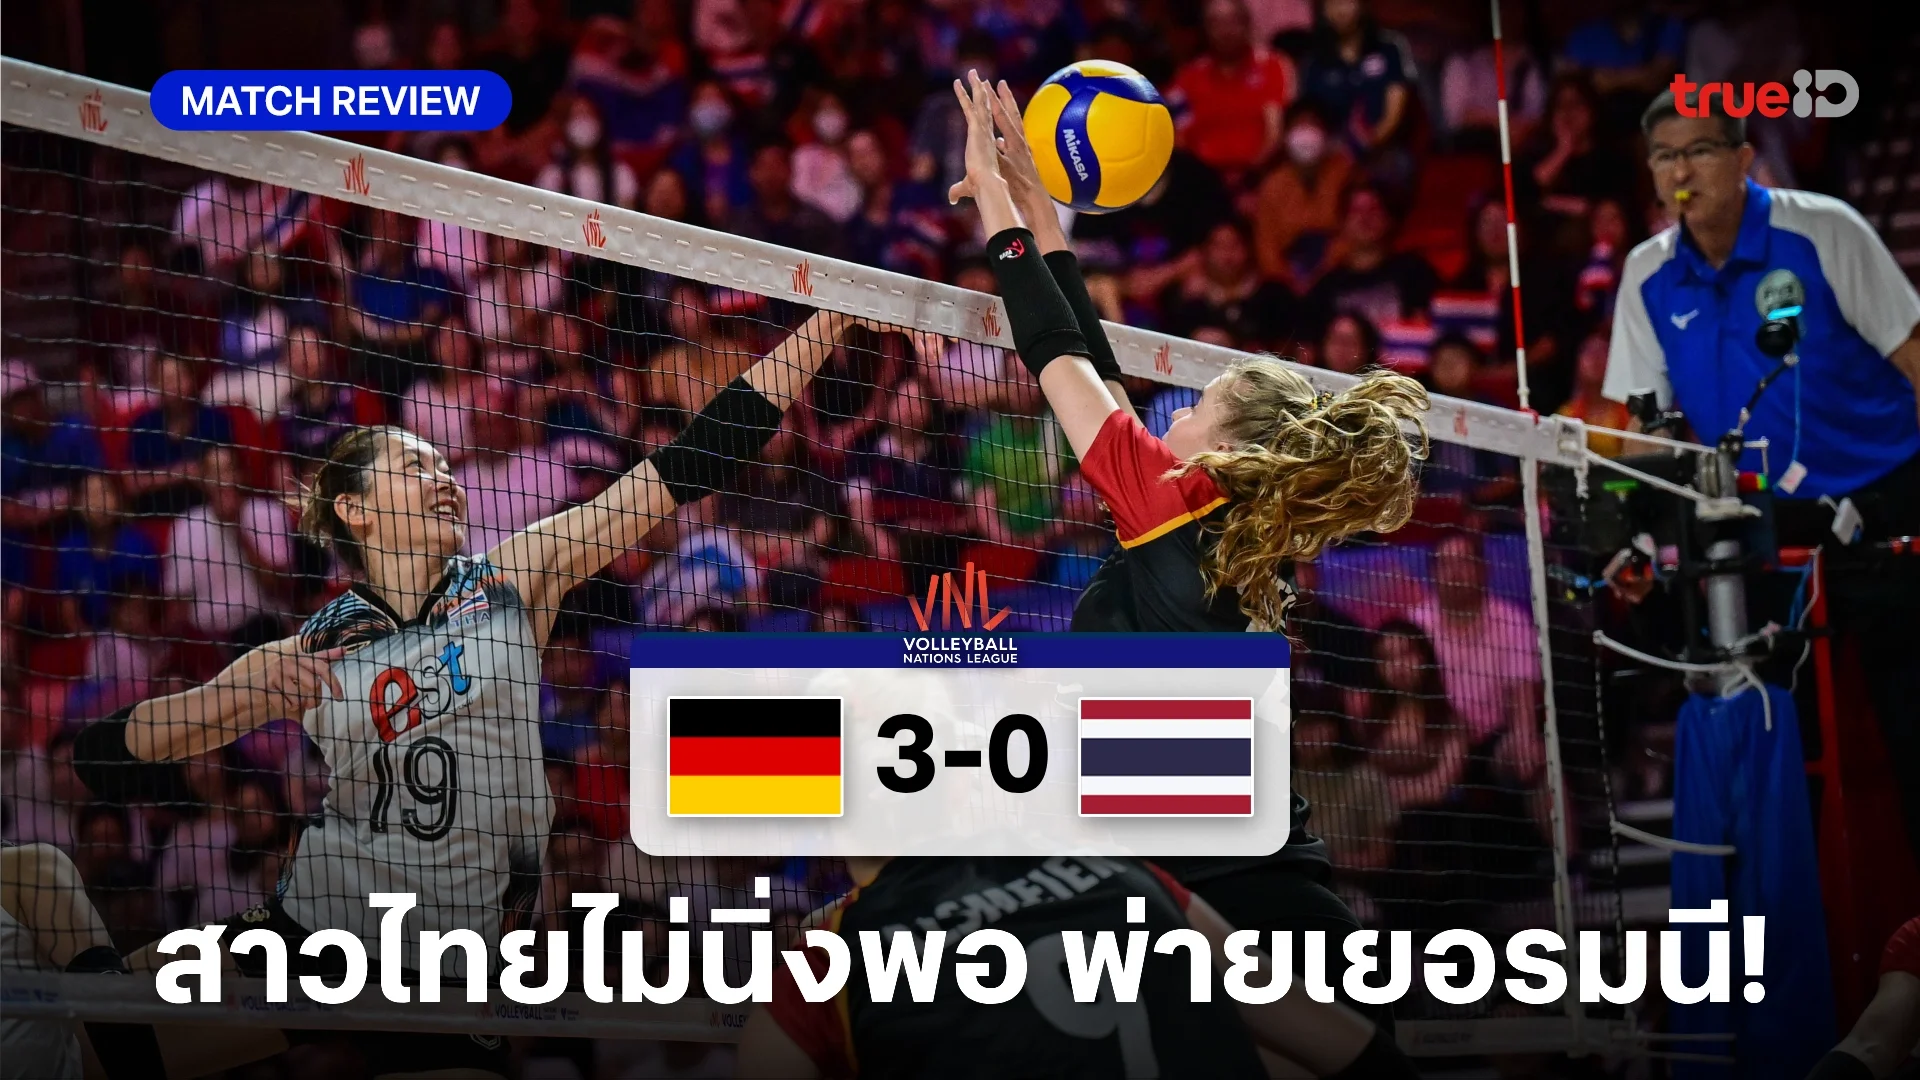 ฟอร์มไม่นิ่ง! นักตบสาวไทย แพ้ เยอรมนี 0-3 เซต ส่งท้าย VNL สนามสาม